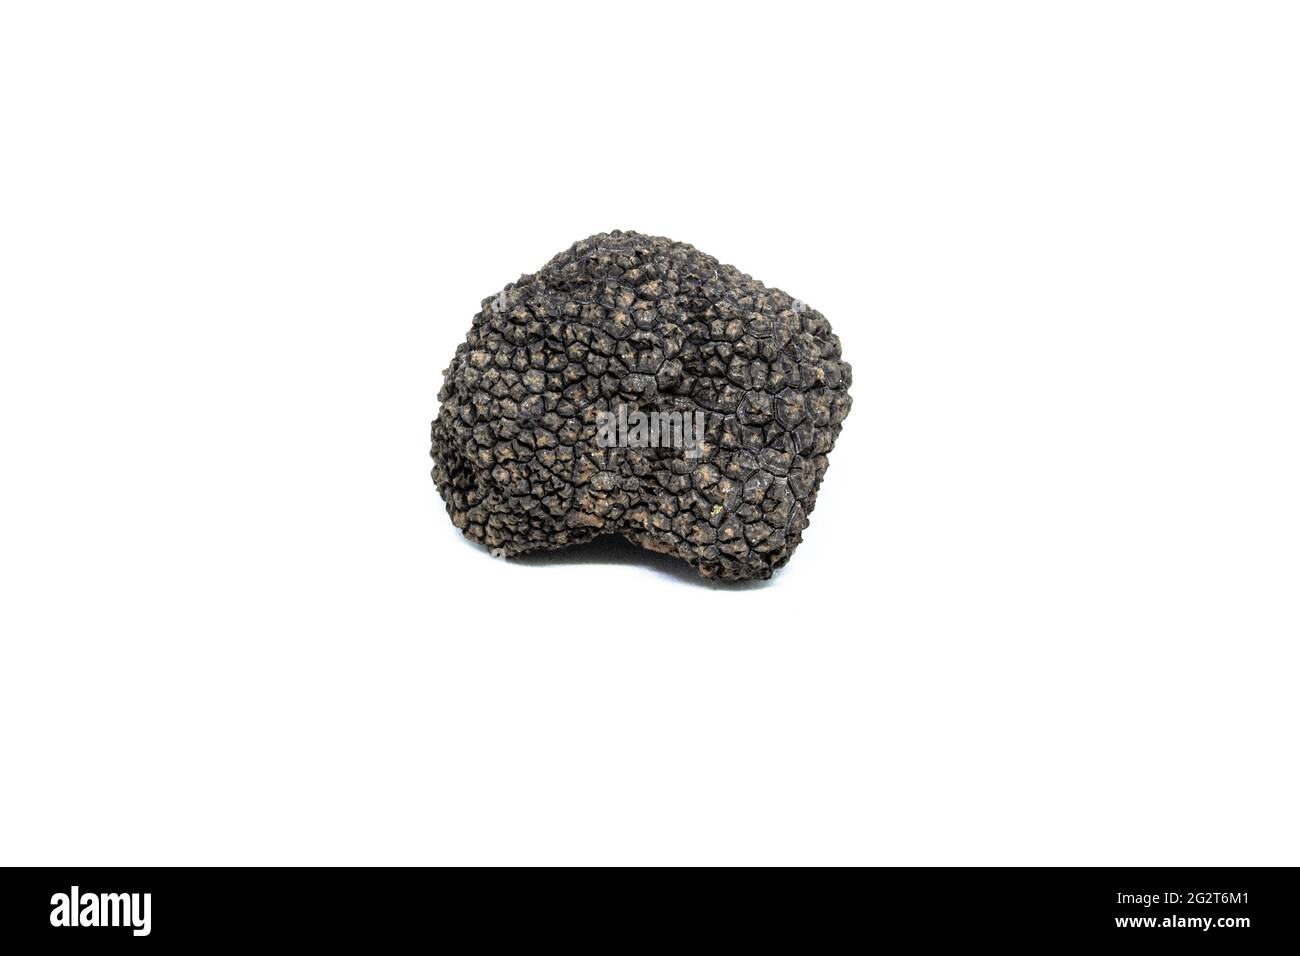 une truffe noire unique, tuber aestivum, photographiée sur fond blanc Banque D'Images